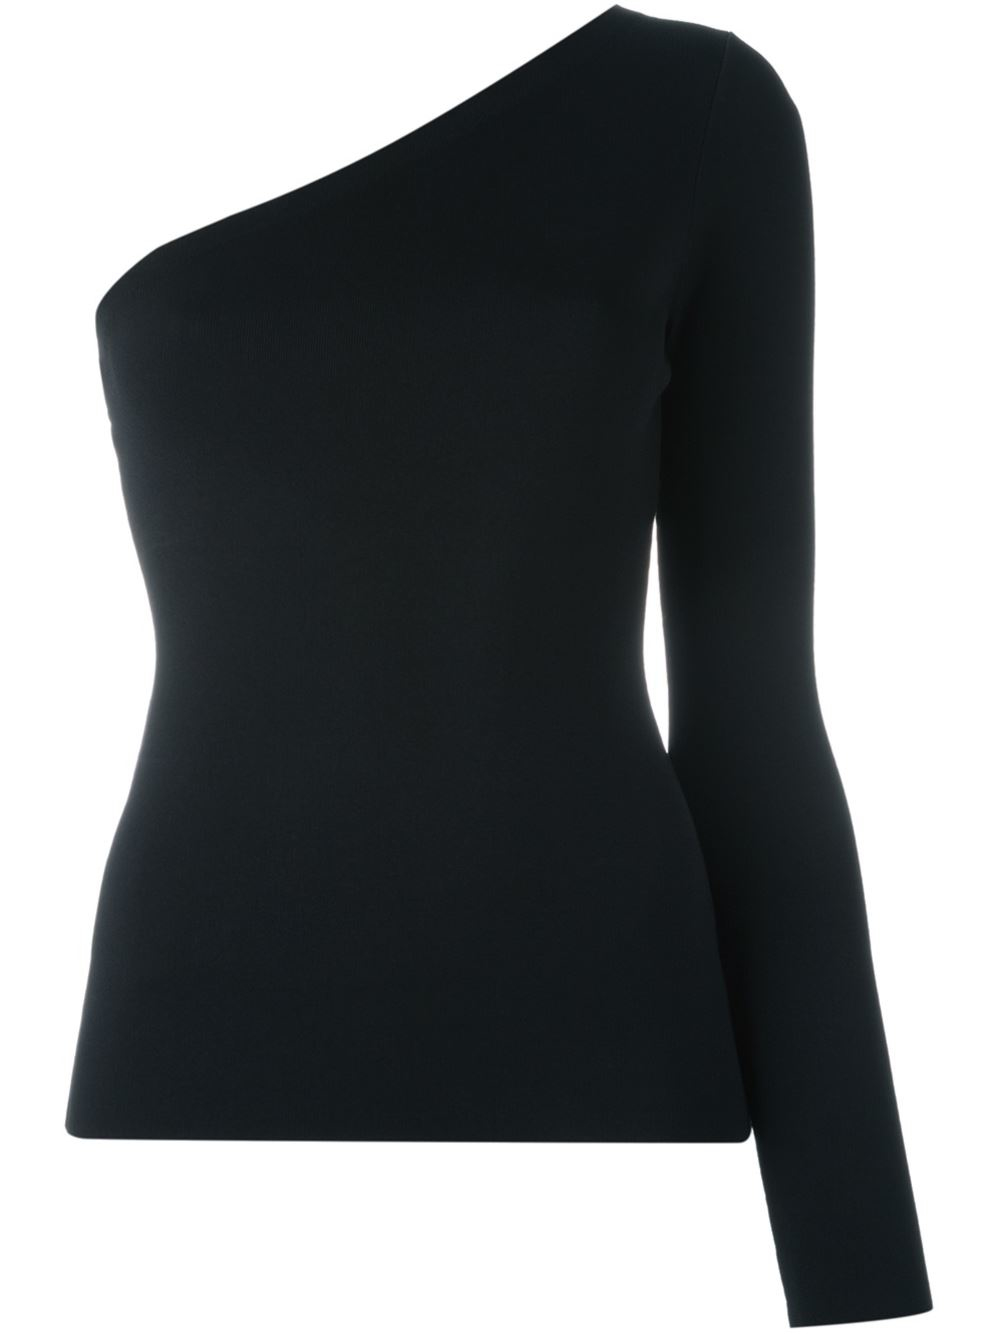 One-shoulder Long Sleeve Top in Black Lyst